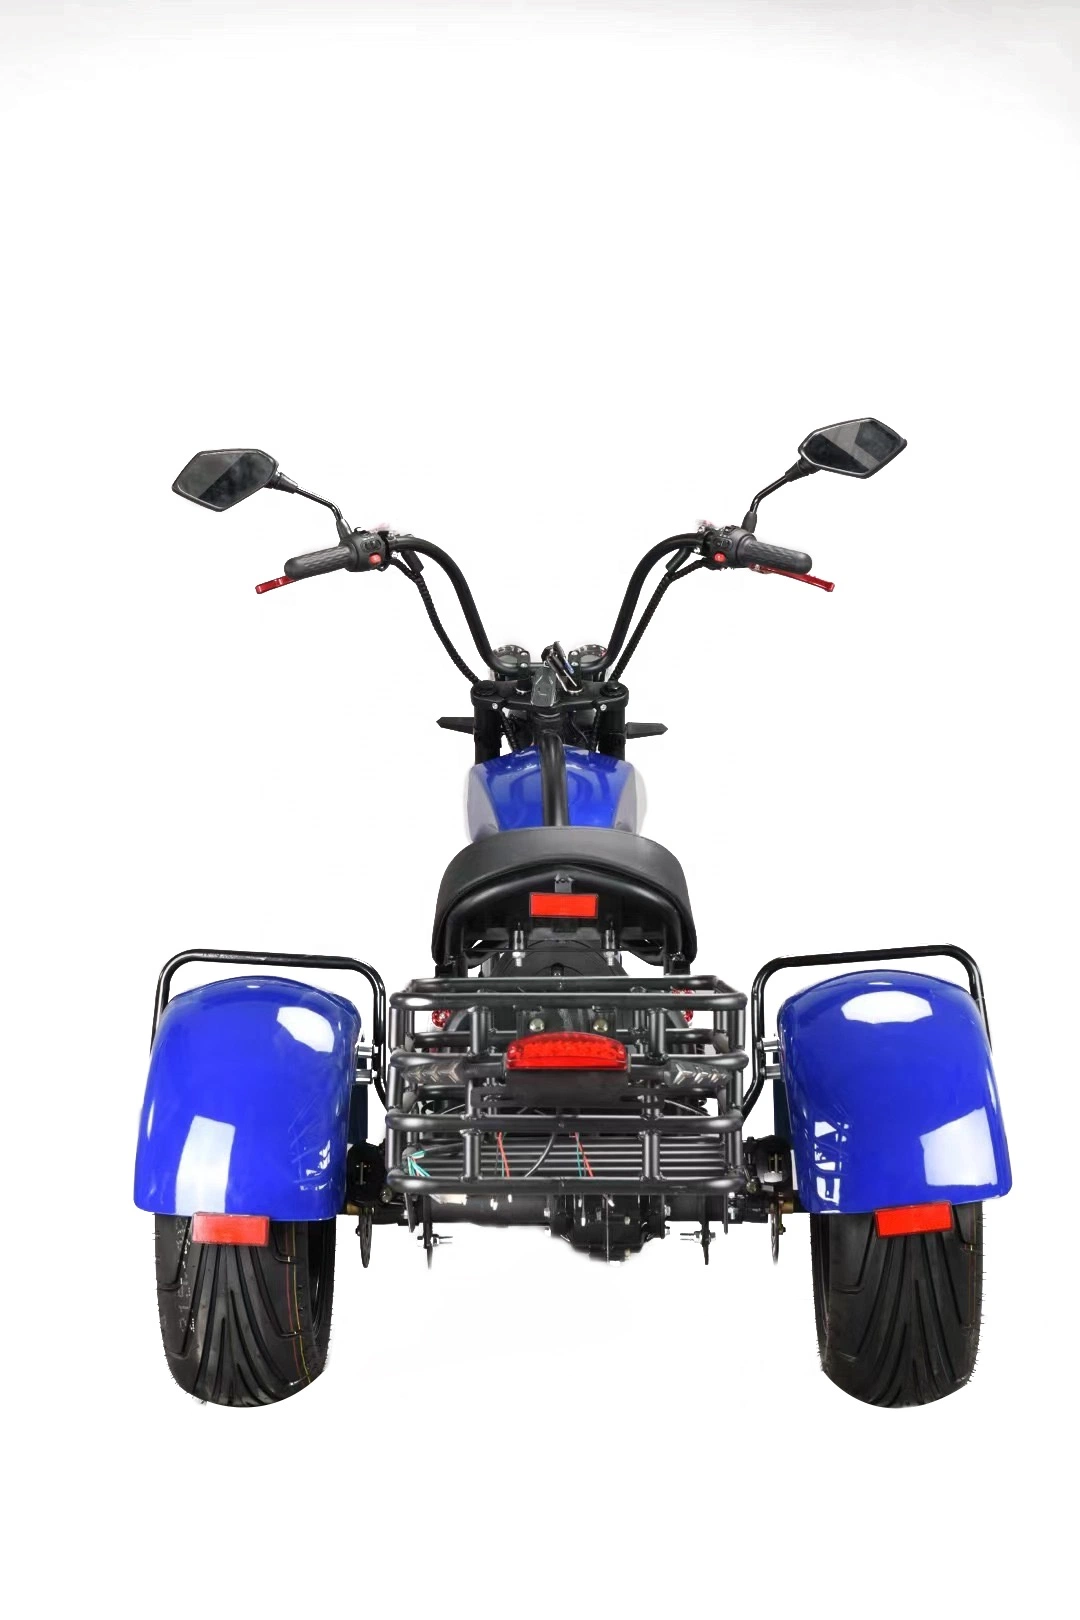 Venda Quente 2000W Moto Elétrica Fora de Estrada Scooter Citycoco Adulto Elektro Scooter 3 Rodas Gordas com EEC/Coc.